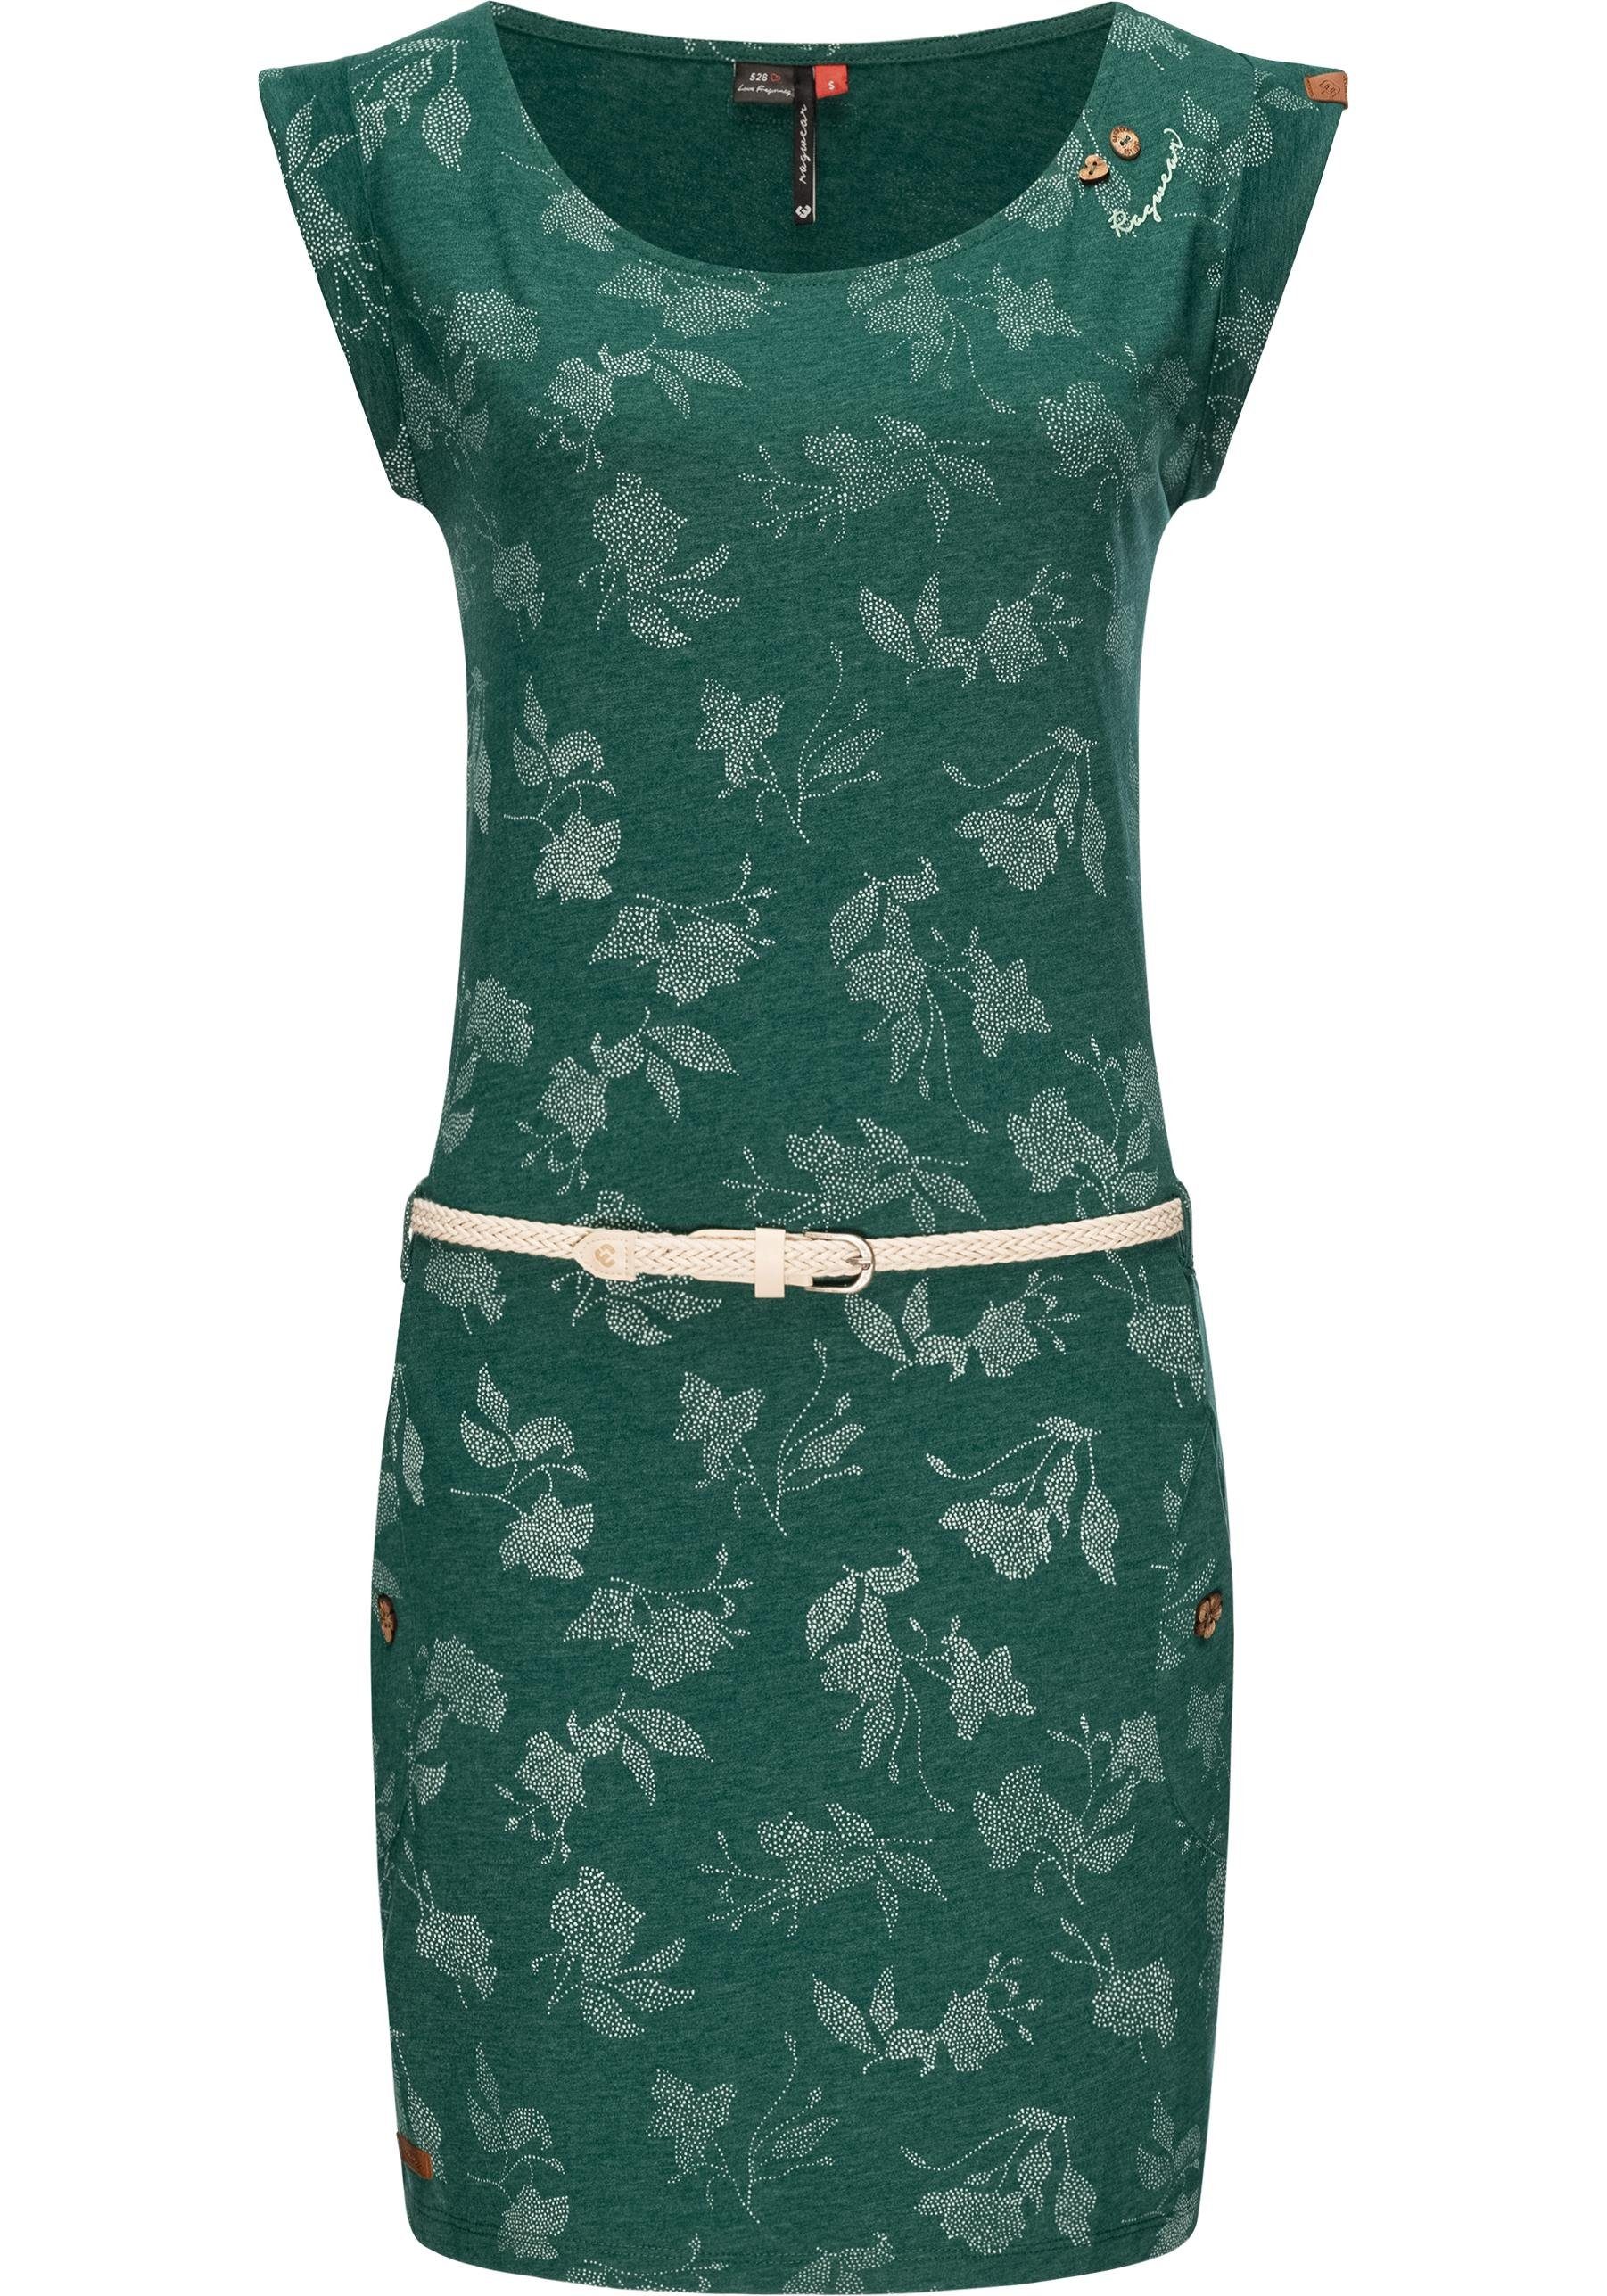 Ragwear Shirtkleid Tag Rose Intl. stylisches Sommerkleid mit Print und hochwertigem Gürtel